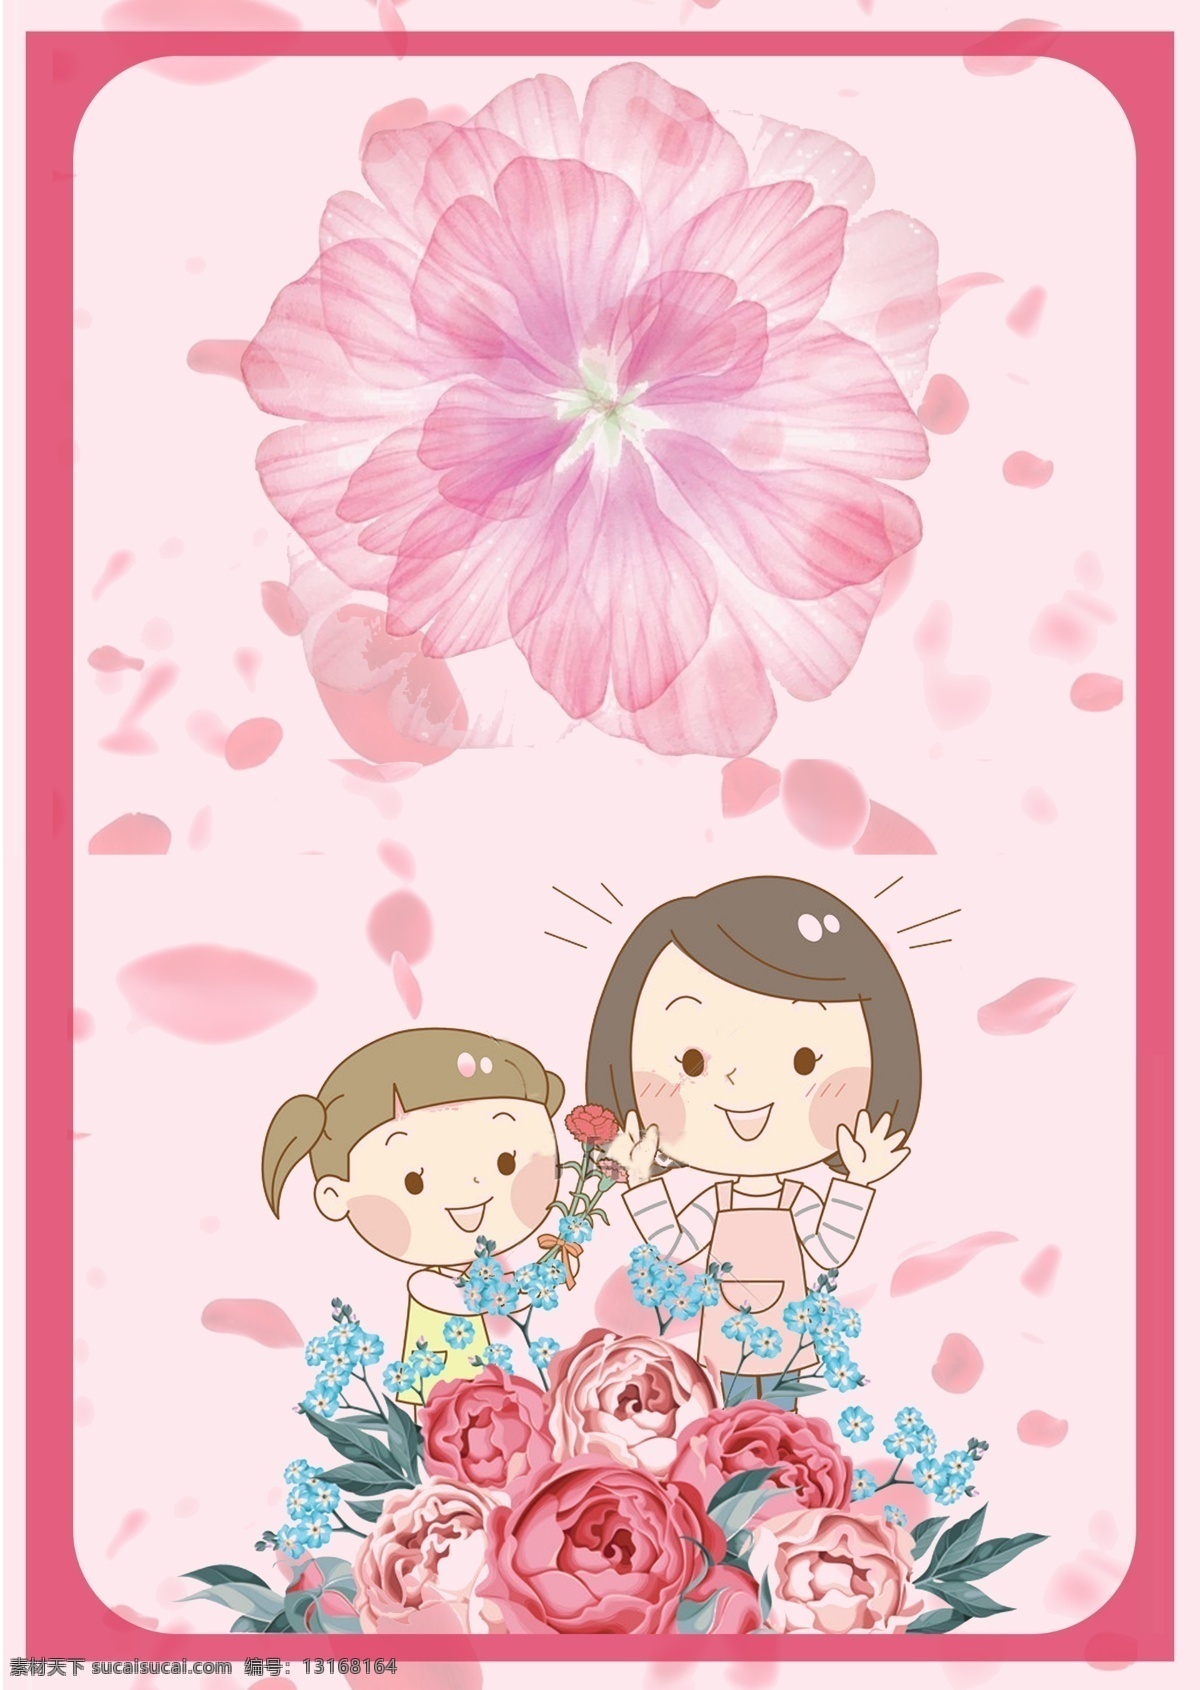 温馨 花朵 温暖 母亲节 专题 背景 手绘 彩绘 边框 卡通 人物